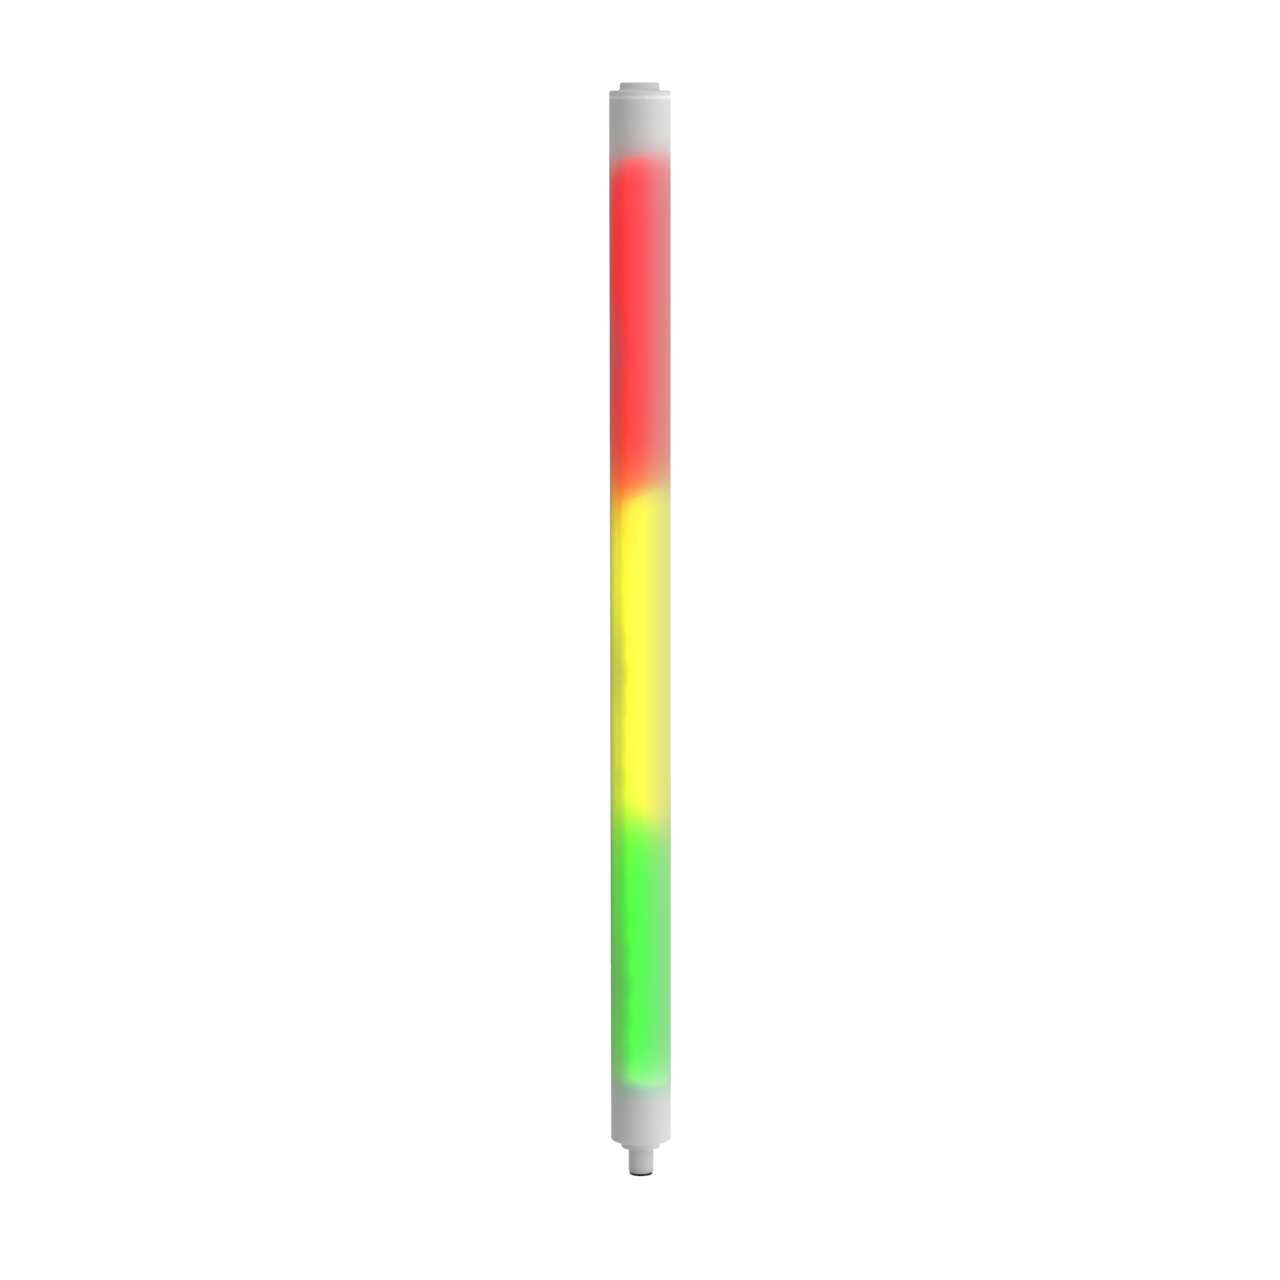 WLS27 Multicolor LED Strip Light